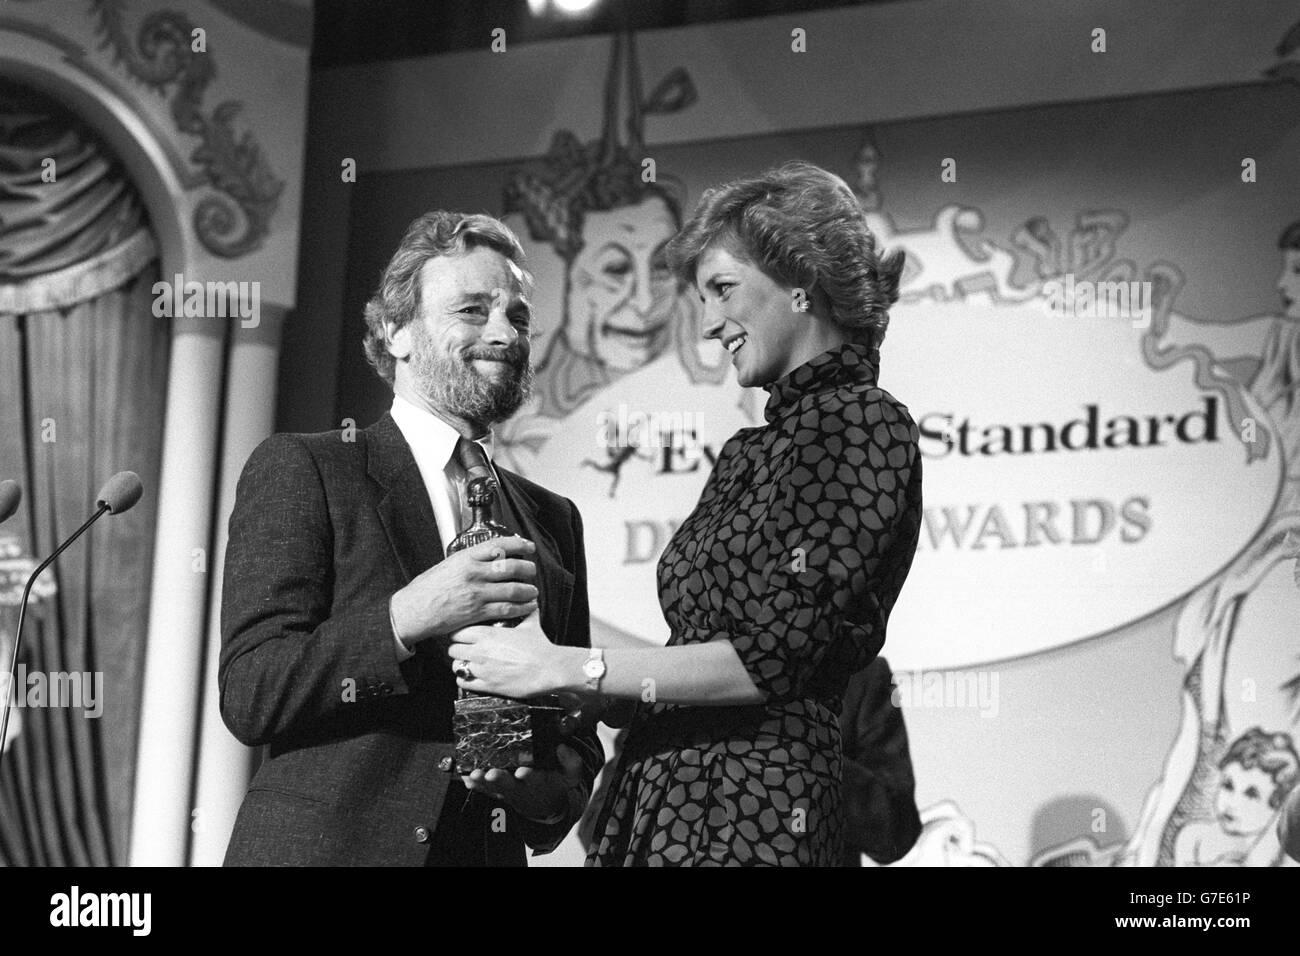 Il compositore americano Stephen Sondheim riceve il Premio Speciale ai premi serali Standard Drama per il suo contributo al teatro musicale, che gli viene consegnato dalla Principessa di Galles. Foto Stock